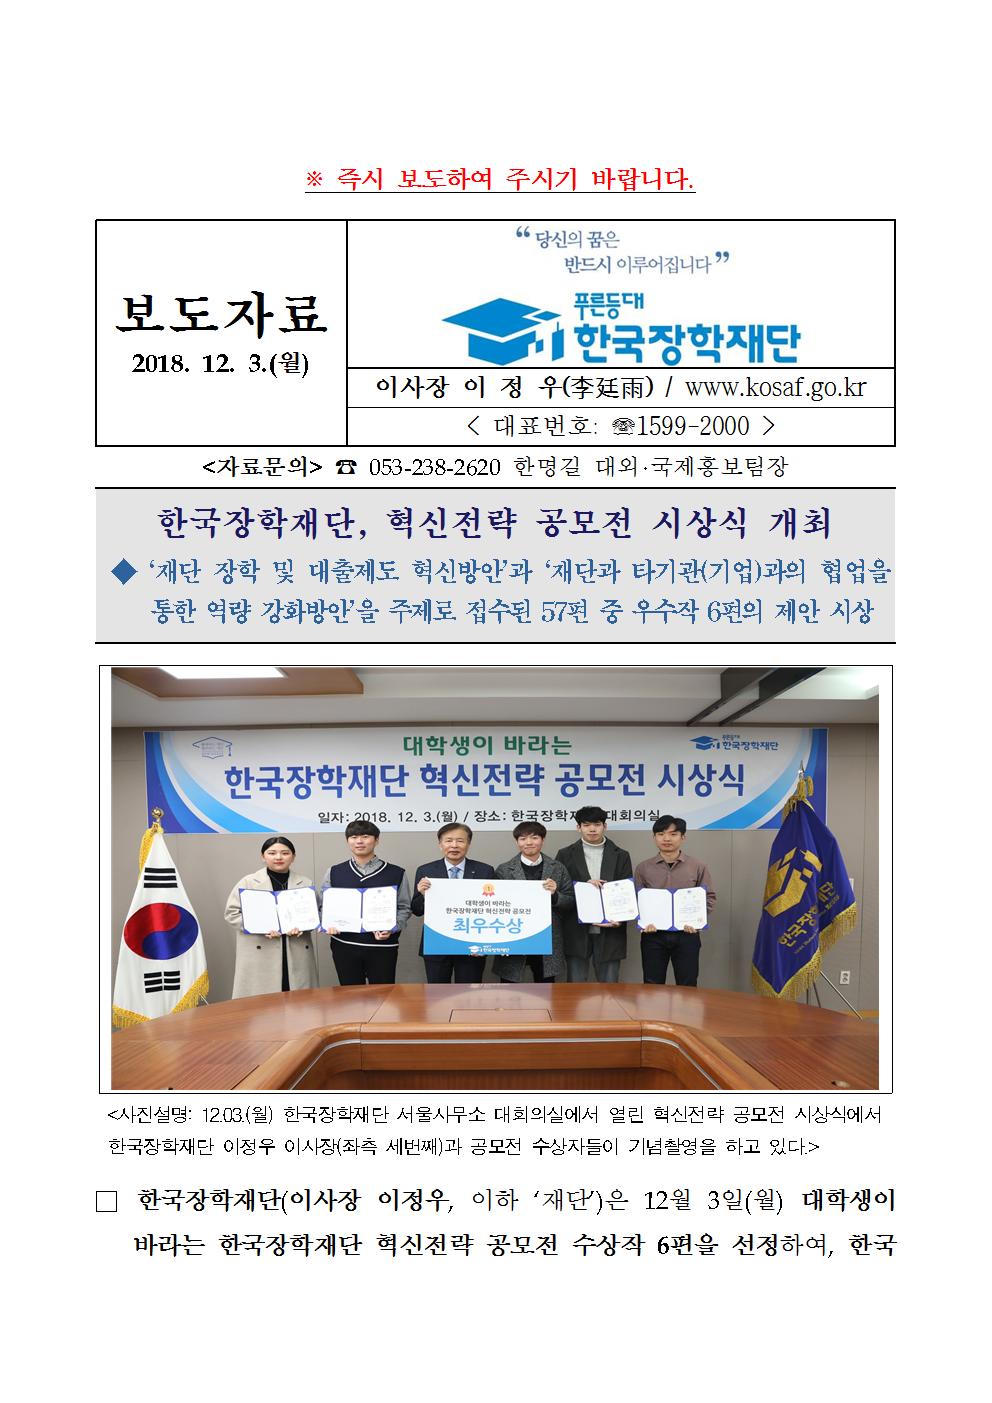 12-03(월)[보도자료] 한국장학재단 혁신 전략 공모전 시상식 개최001.jpg